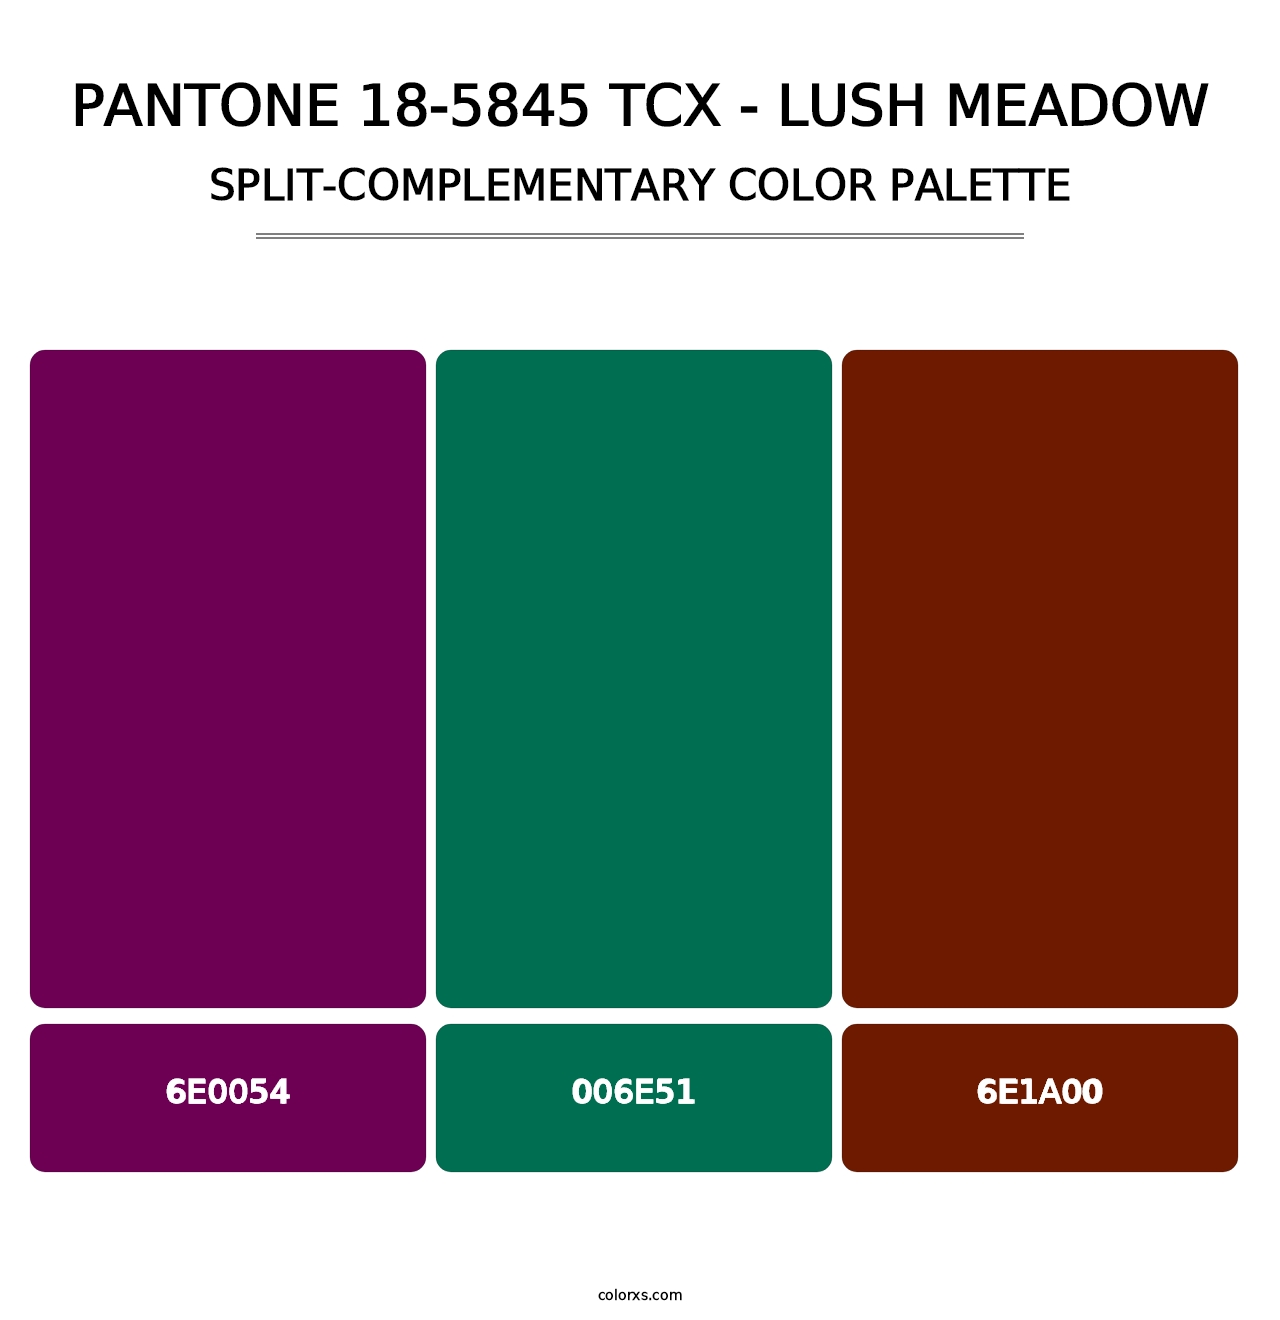 PANTONE 18-5845 TCX - Lush Meadow - Split-Complementary Color Palette